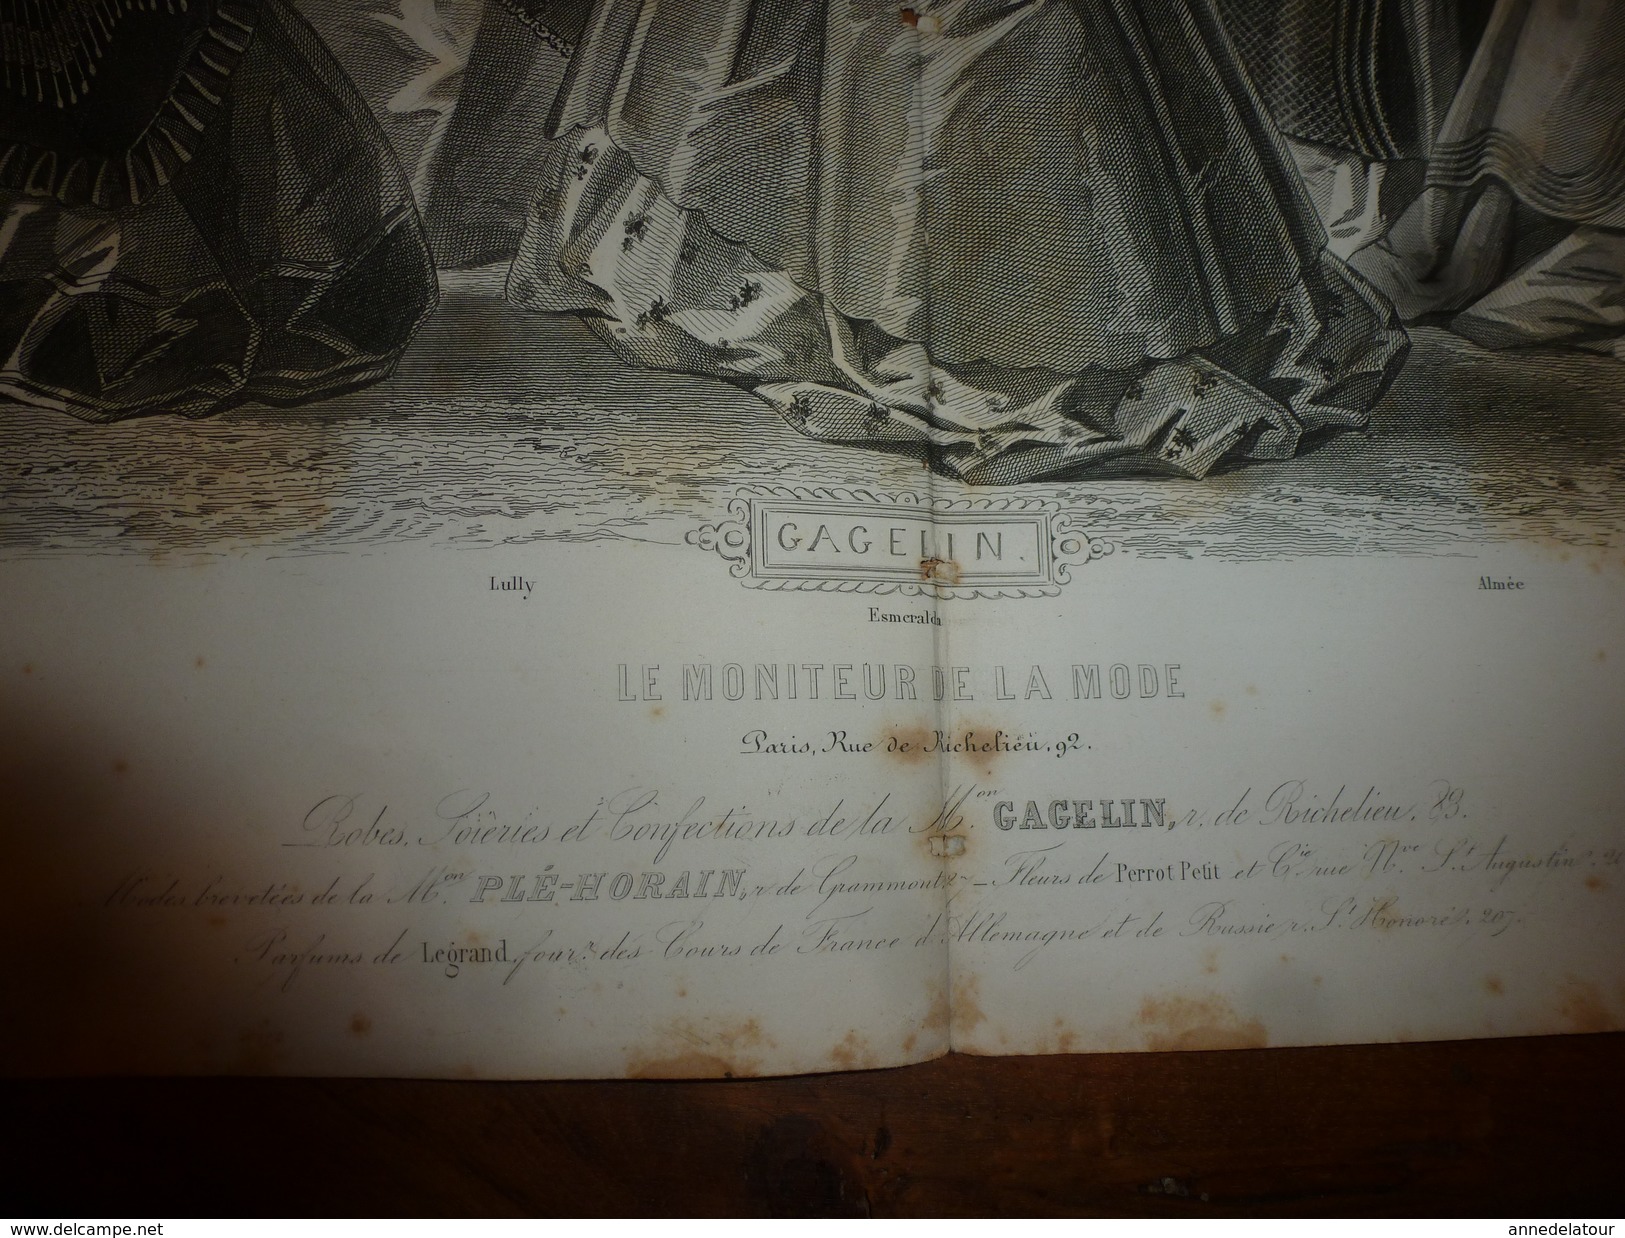 1861-1862  Gravure avec notice  : Planche de Confection de la Maison GAGELIN (manteaux,chapeaux,pardessus,capote,etc)